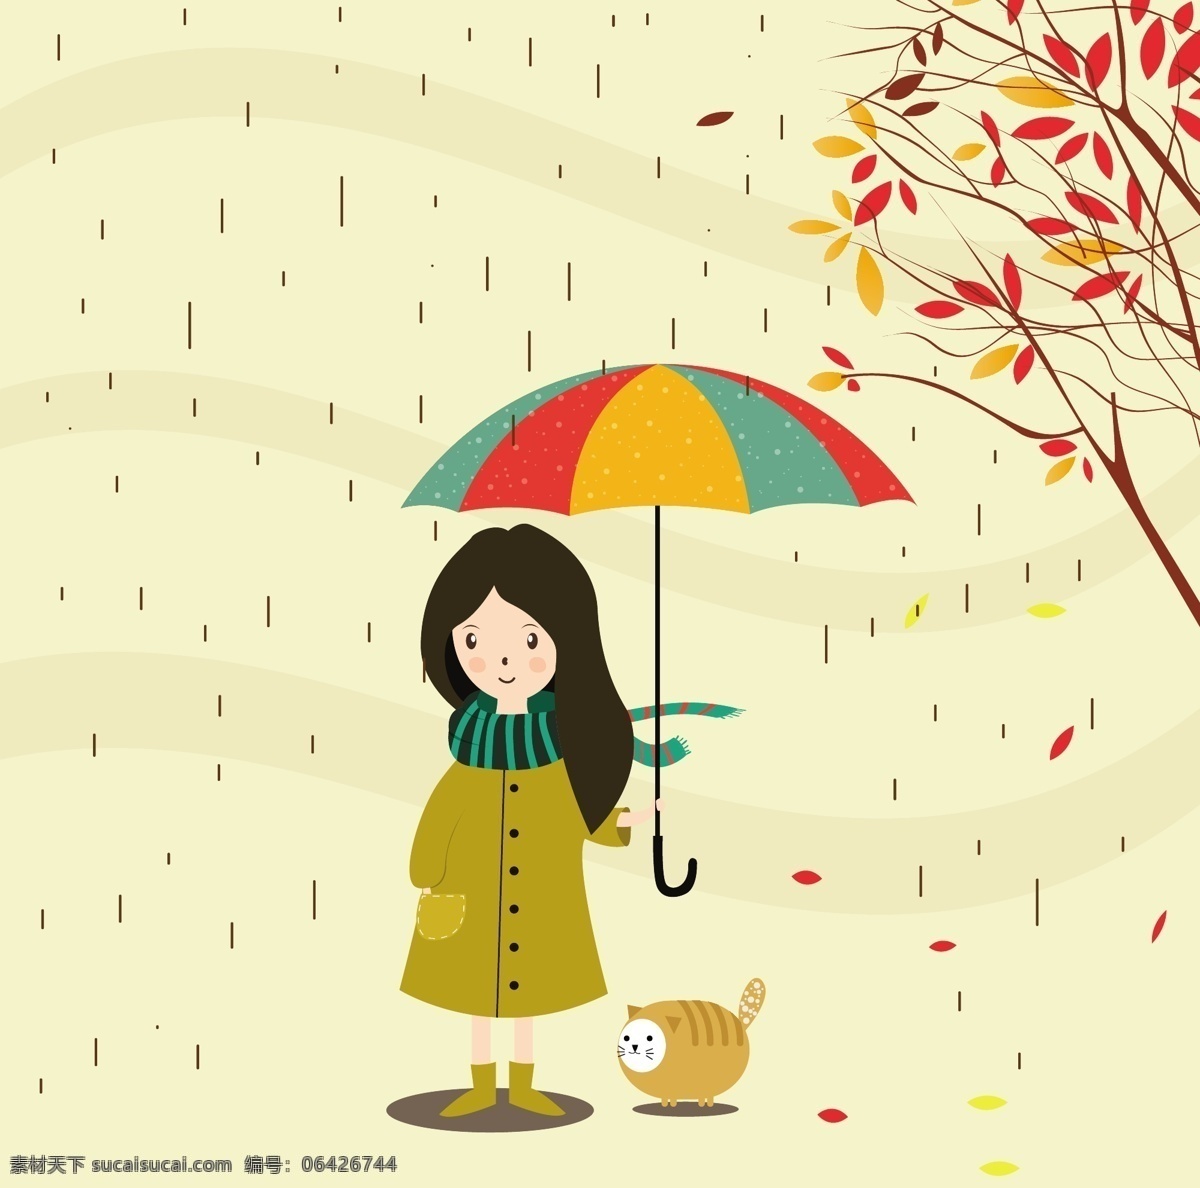 可爱 手绘 雨季 插画 手绘插画 女孩 下雨 叶子 伞 矢量素材